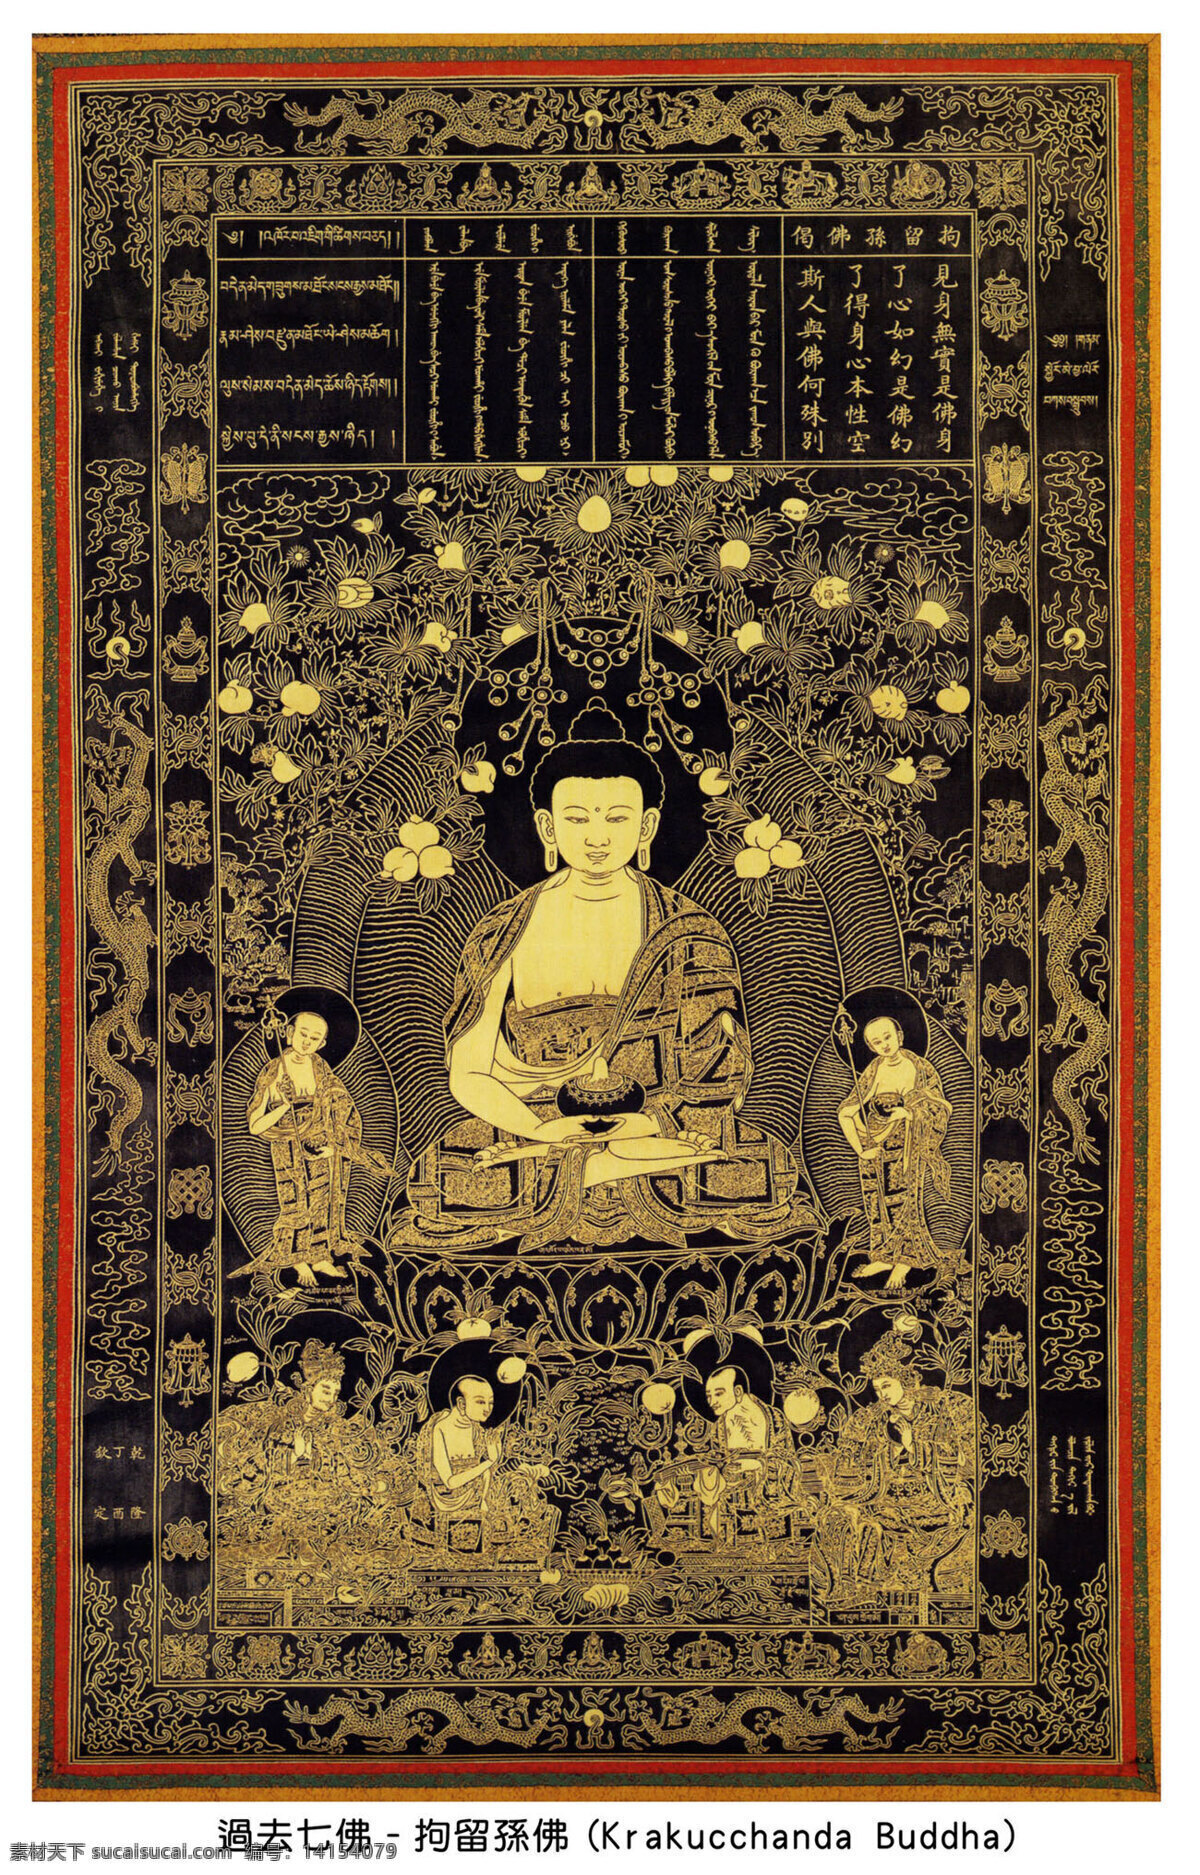 过去 七 佛 佛教 佛像 绘画 文化艺术 艺术 宗教信仰 过去七佛 拘留孙佛 汉传佛教